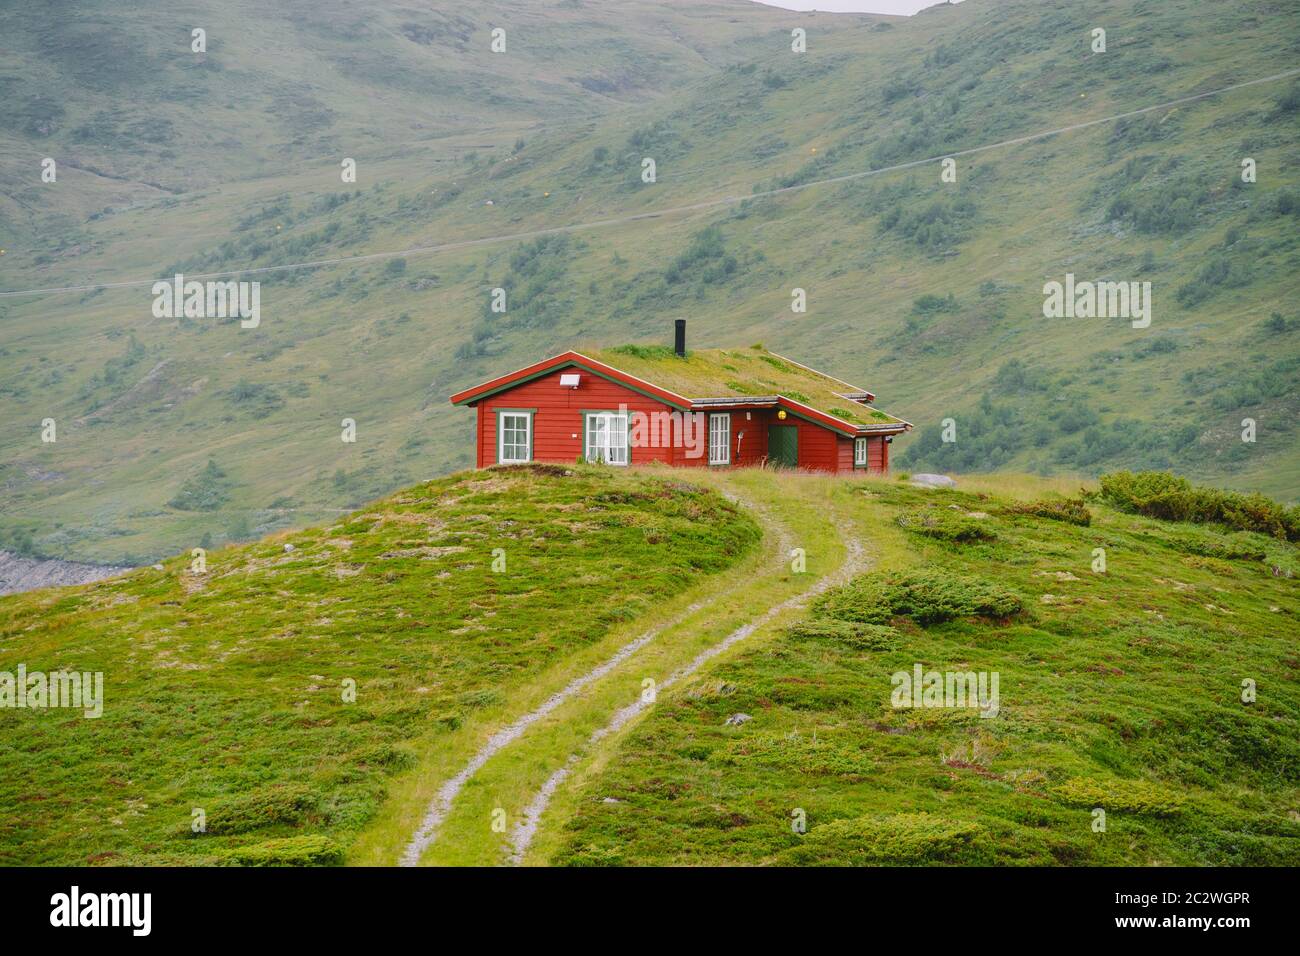 Huttes de montagne en bois de refuge en Norvège. Paysage norvégien avec des maisons typiques scandinaves en herbe sur le toit. Vill de montagne Banque D'Images